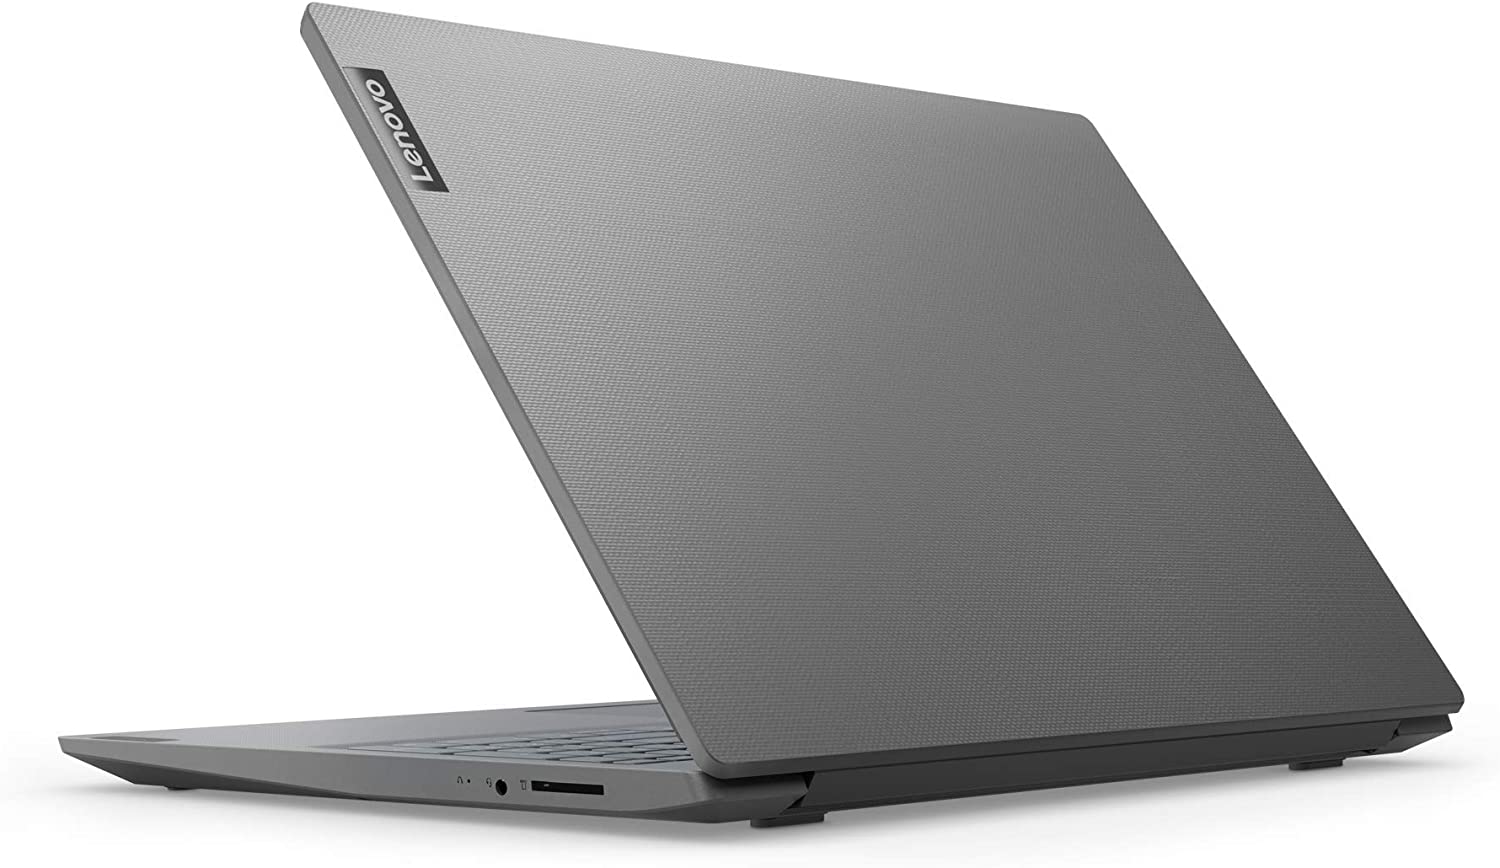 Laptop LENOVO V15 Intel Celeron N4020, Ram 8Gb, Disco solido SSD 256, Pantalla 15.6"  (1920x1080) FHD, Web cam incorporada,  Teclado Español, Color Gris, Nuevo, garantia 1 año